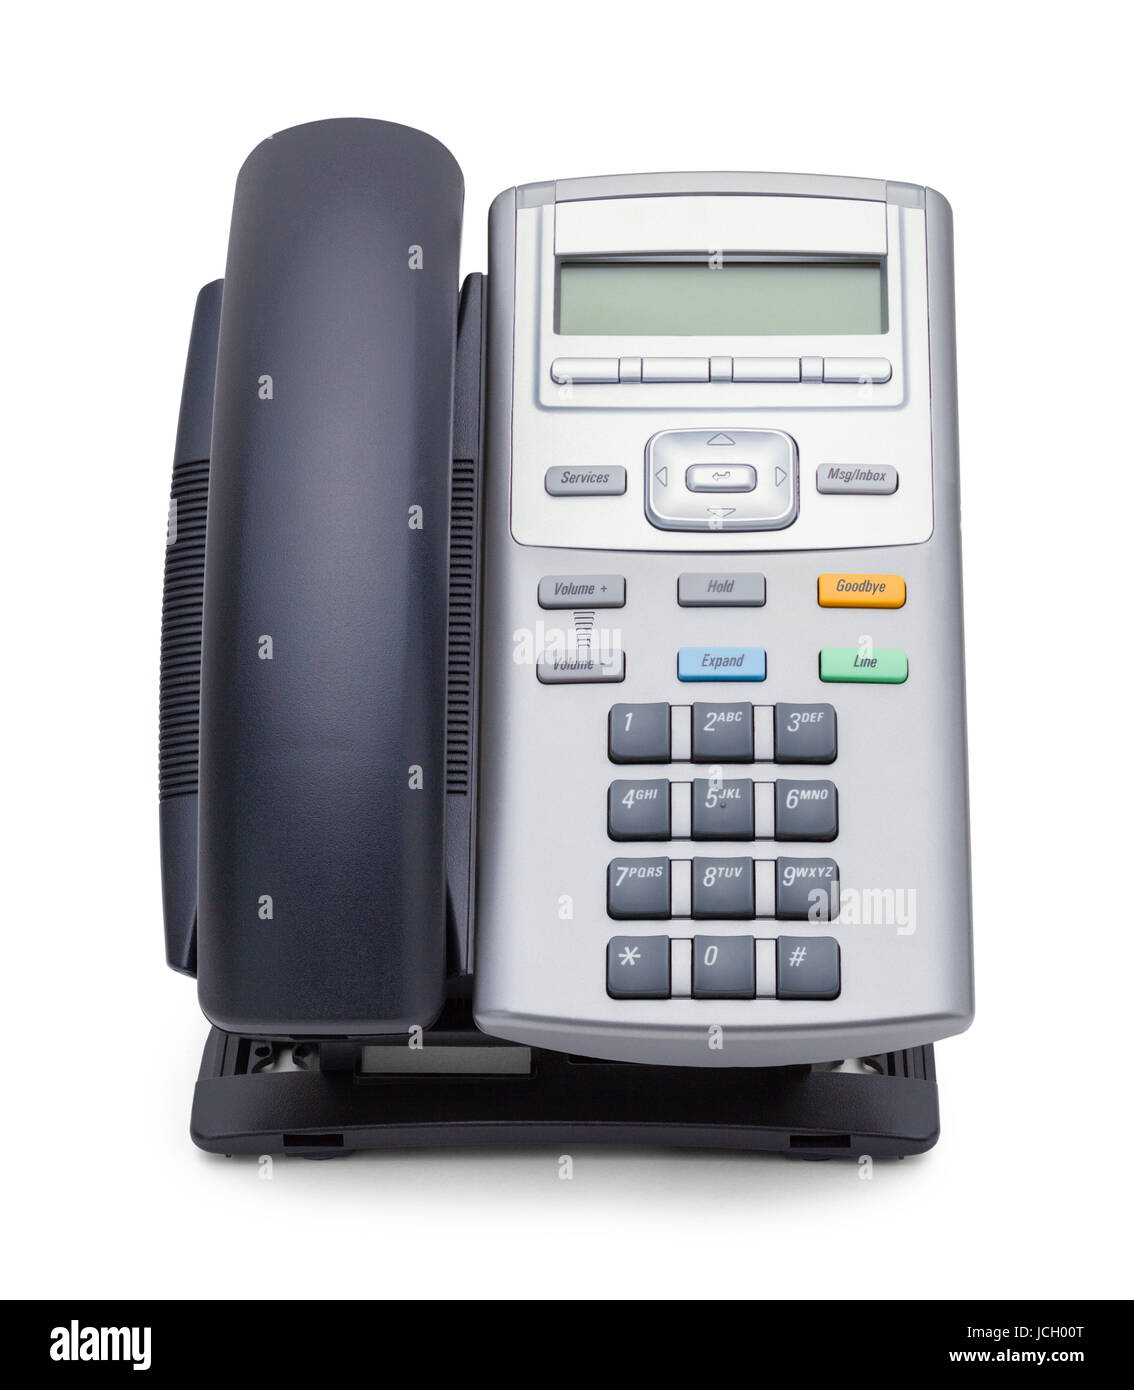 Schwarz und grau Office Telefon Vorderansicht, Isolated on White Background. Stockfoto